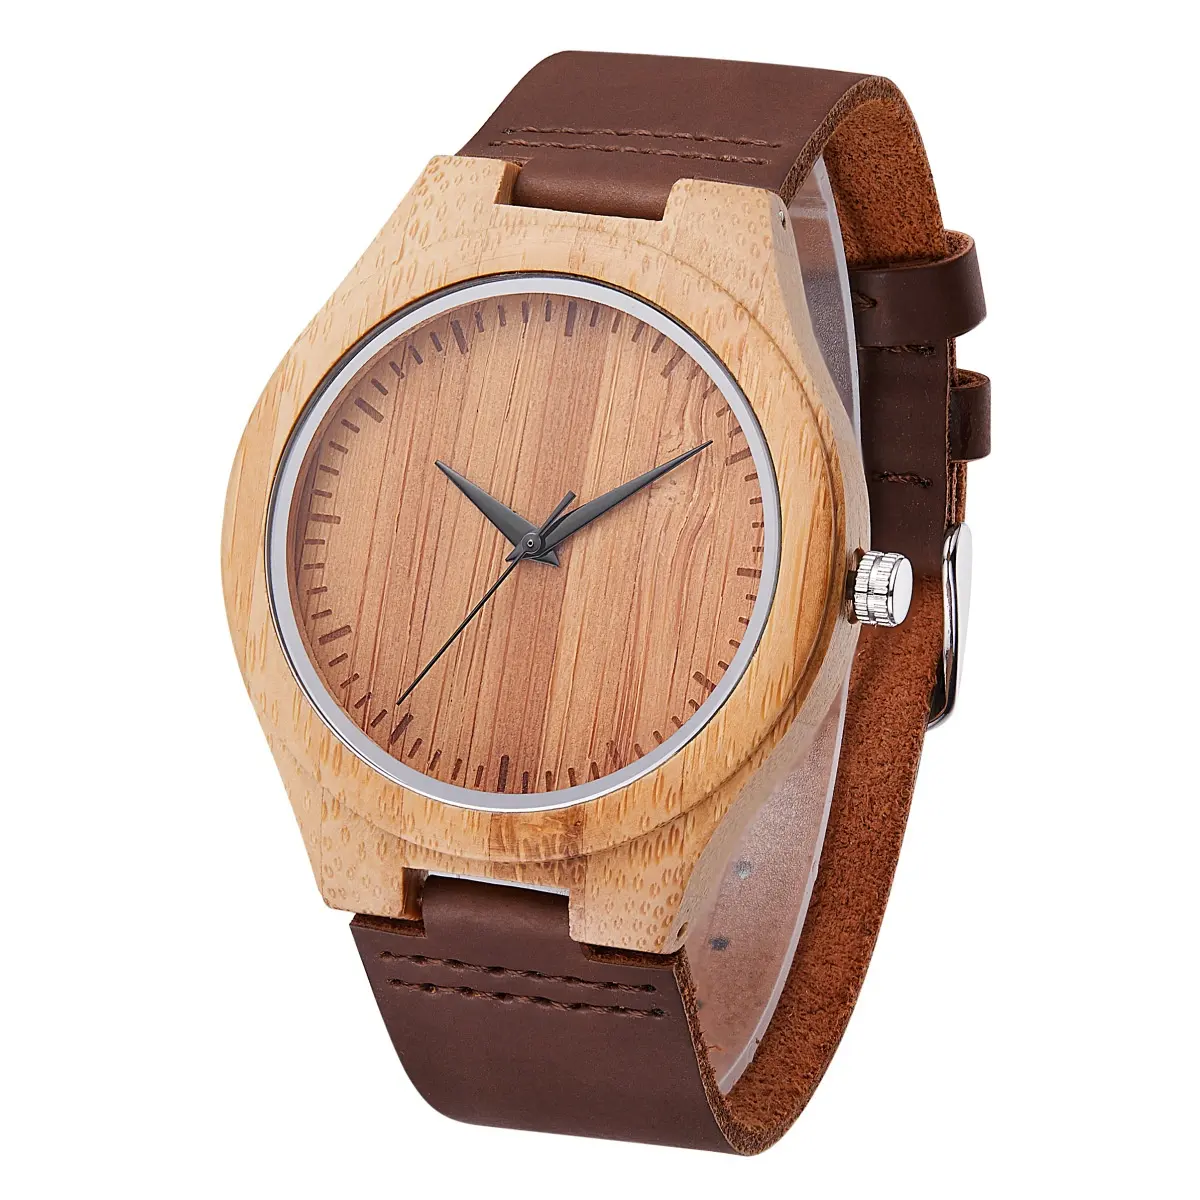 Jam tangan pergelangan tangan kulit murah uniseks desain ceruk jam tangan kayu grosir untuk pria dan wanita penjualan langsung pabrik